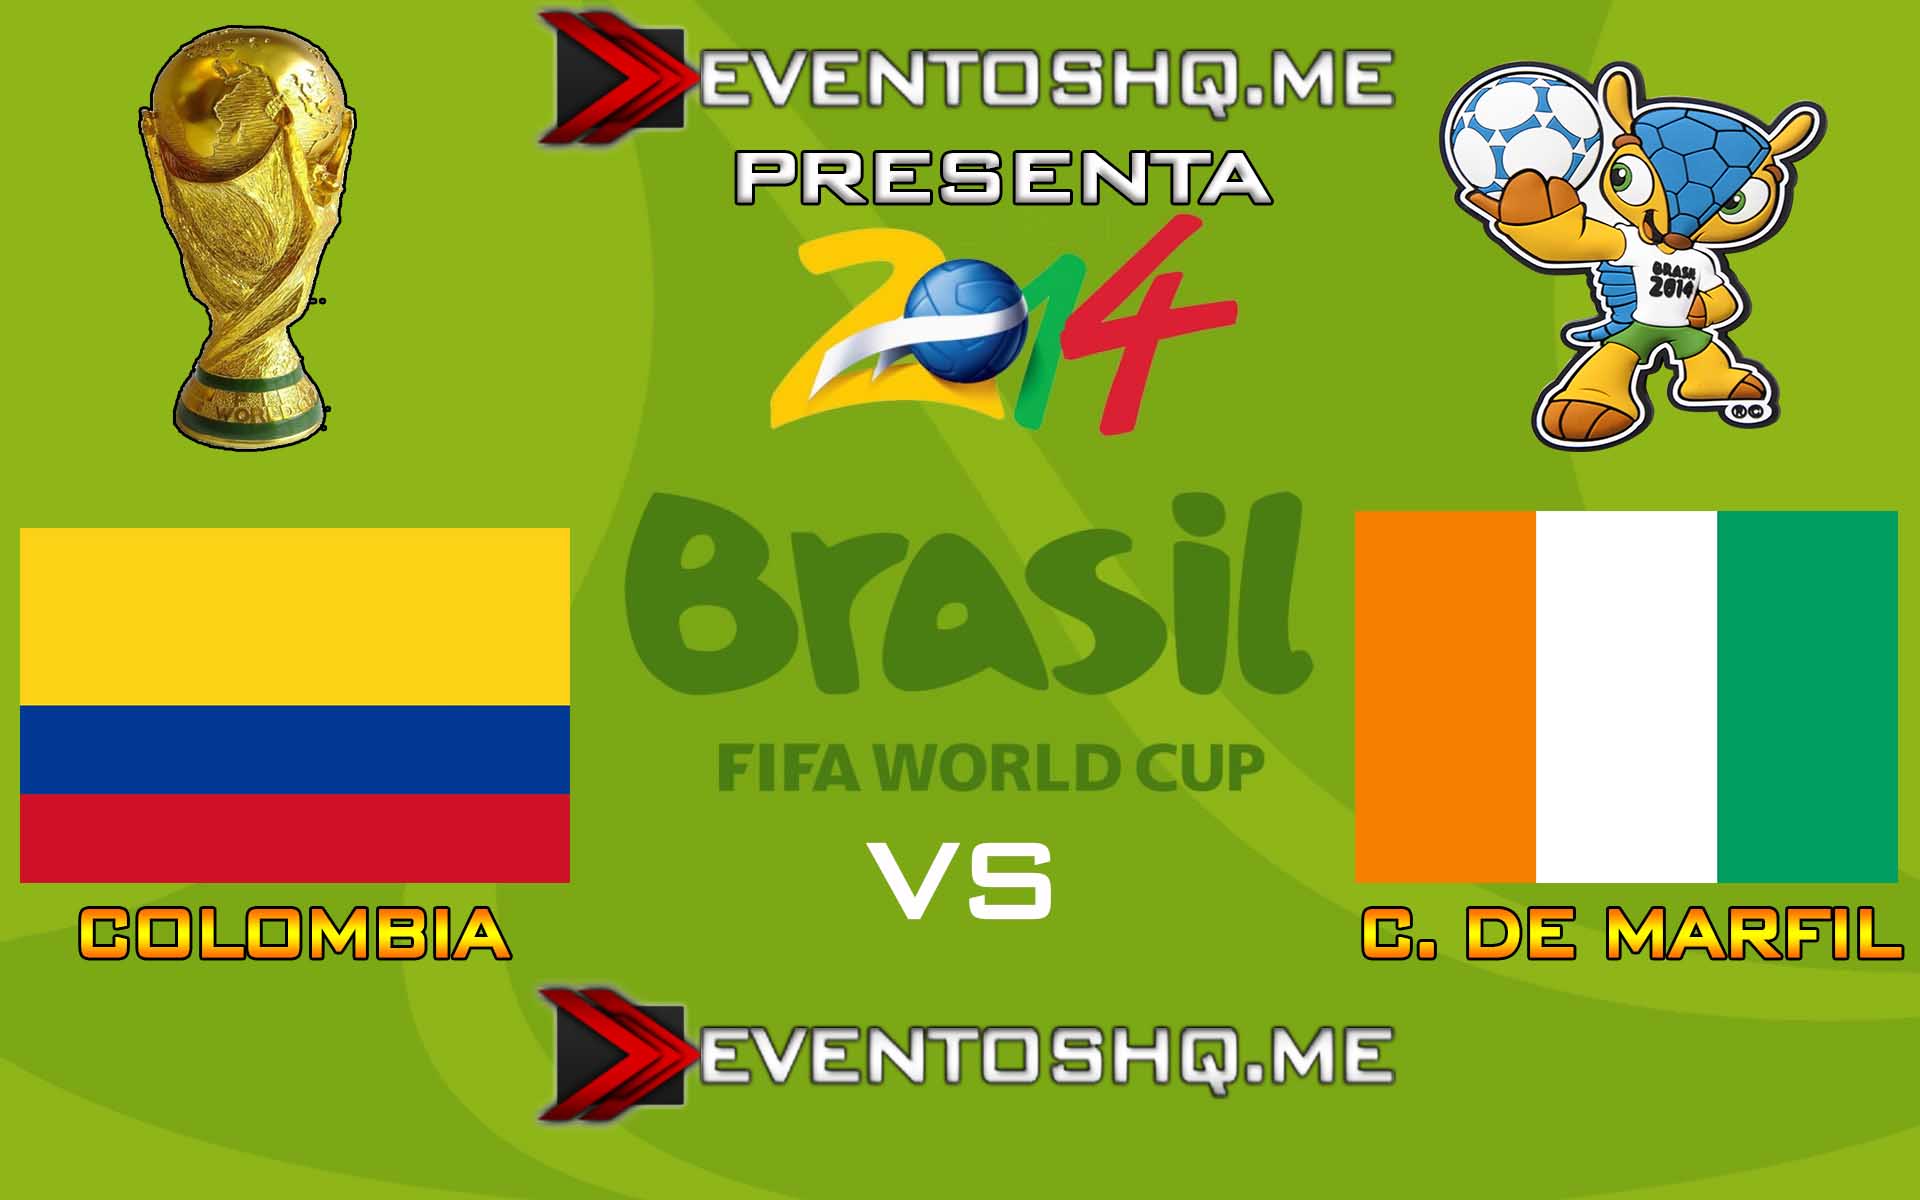 Ver en Vivo Colombia vs Costa de Marfil Mundial Brasil 2014 www.eventoshq.me